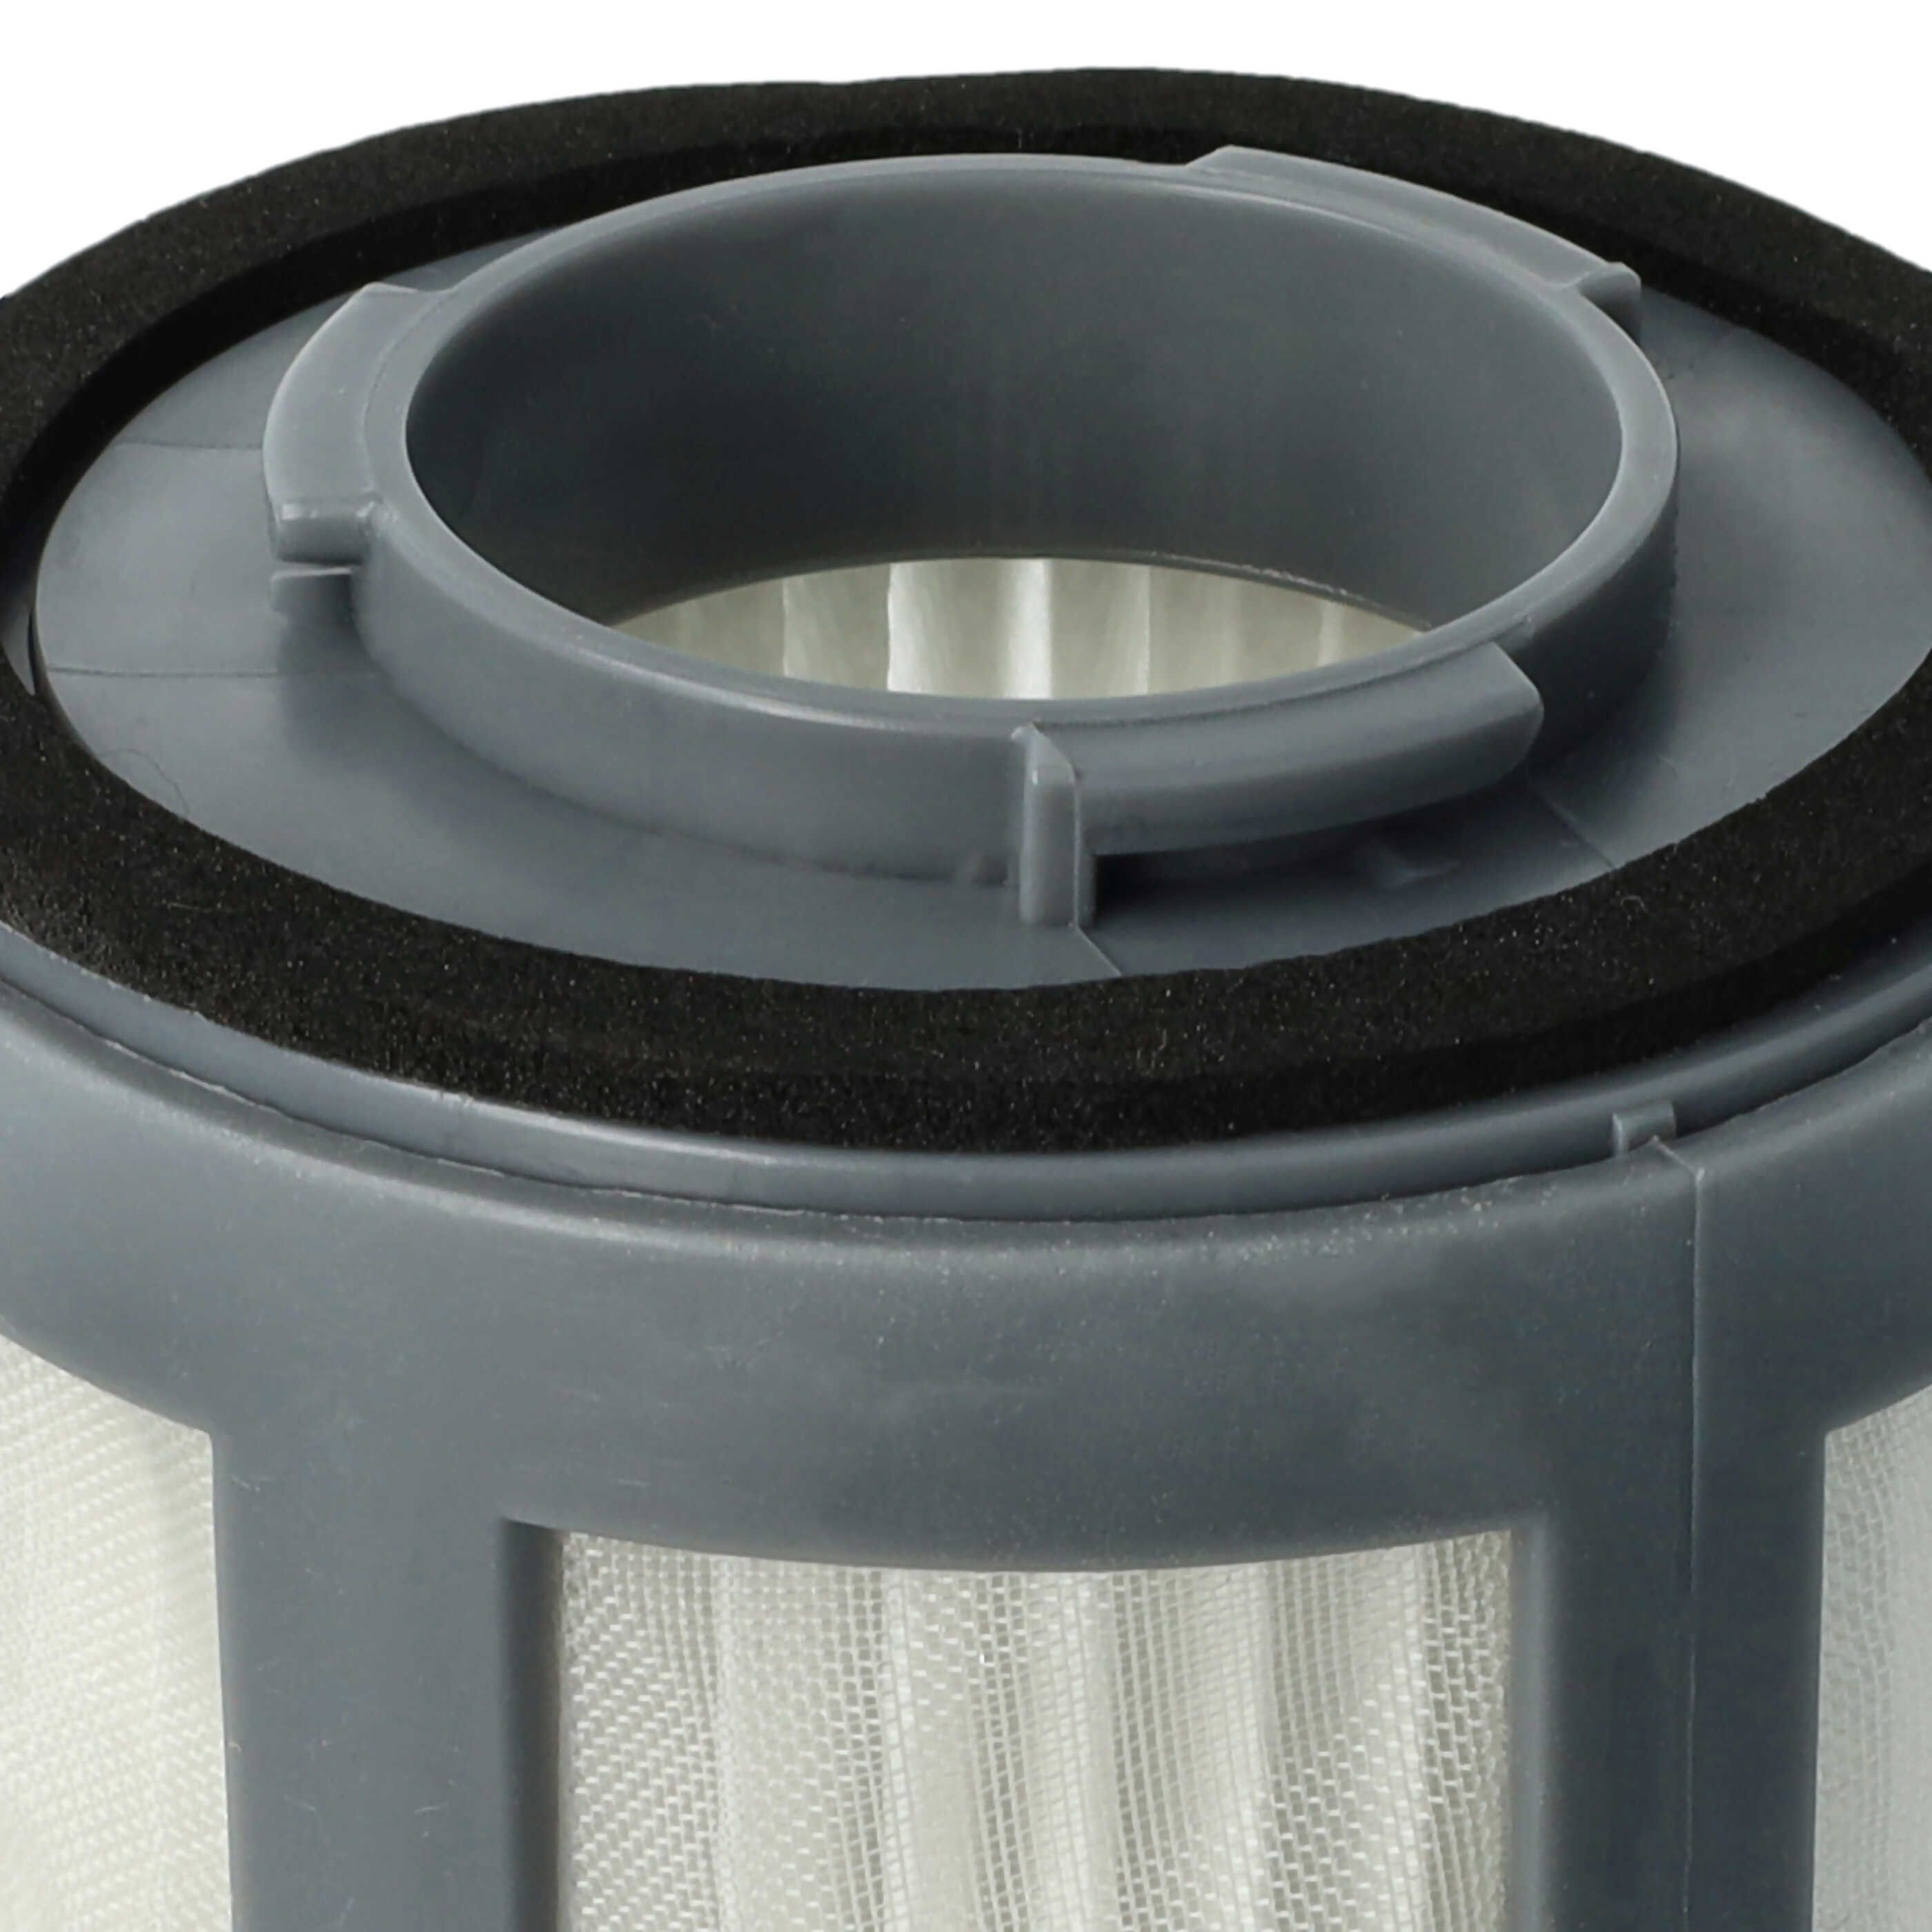 Filtr do odkurzacza BS 9012 CB Eco Cyclon Bomann - wkład filtracyjny (filtr nylonowy + HEPA)